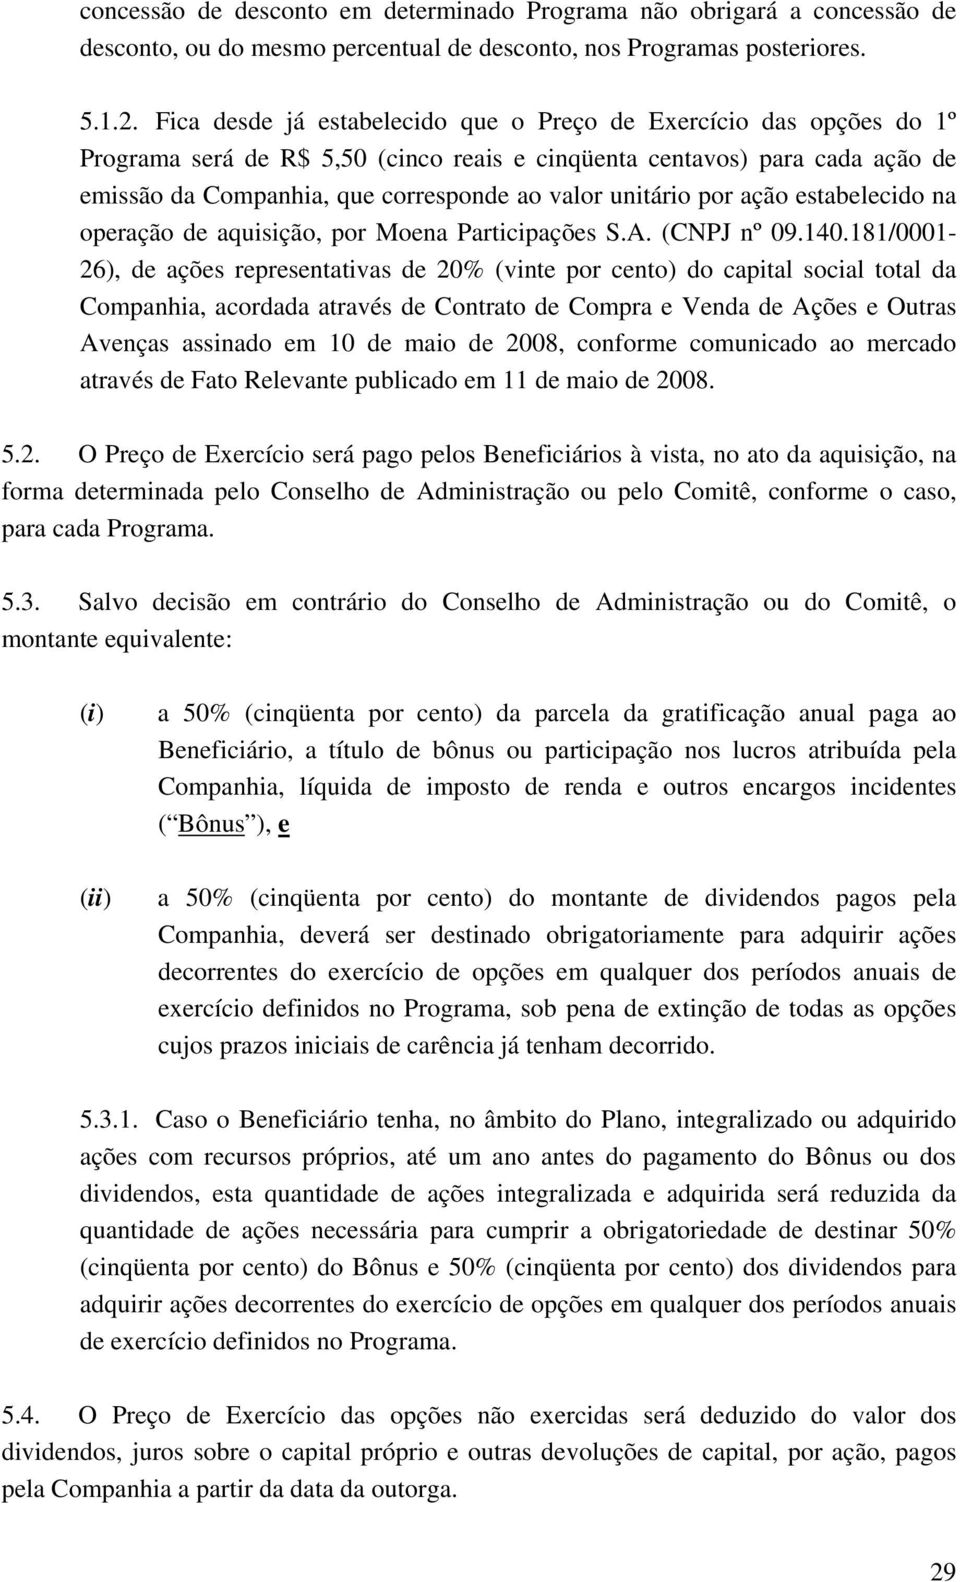 unitário por ação estabelecido na operação de aquisição, por Moena Participações S.A. (CNPJ nº 09.140.